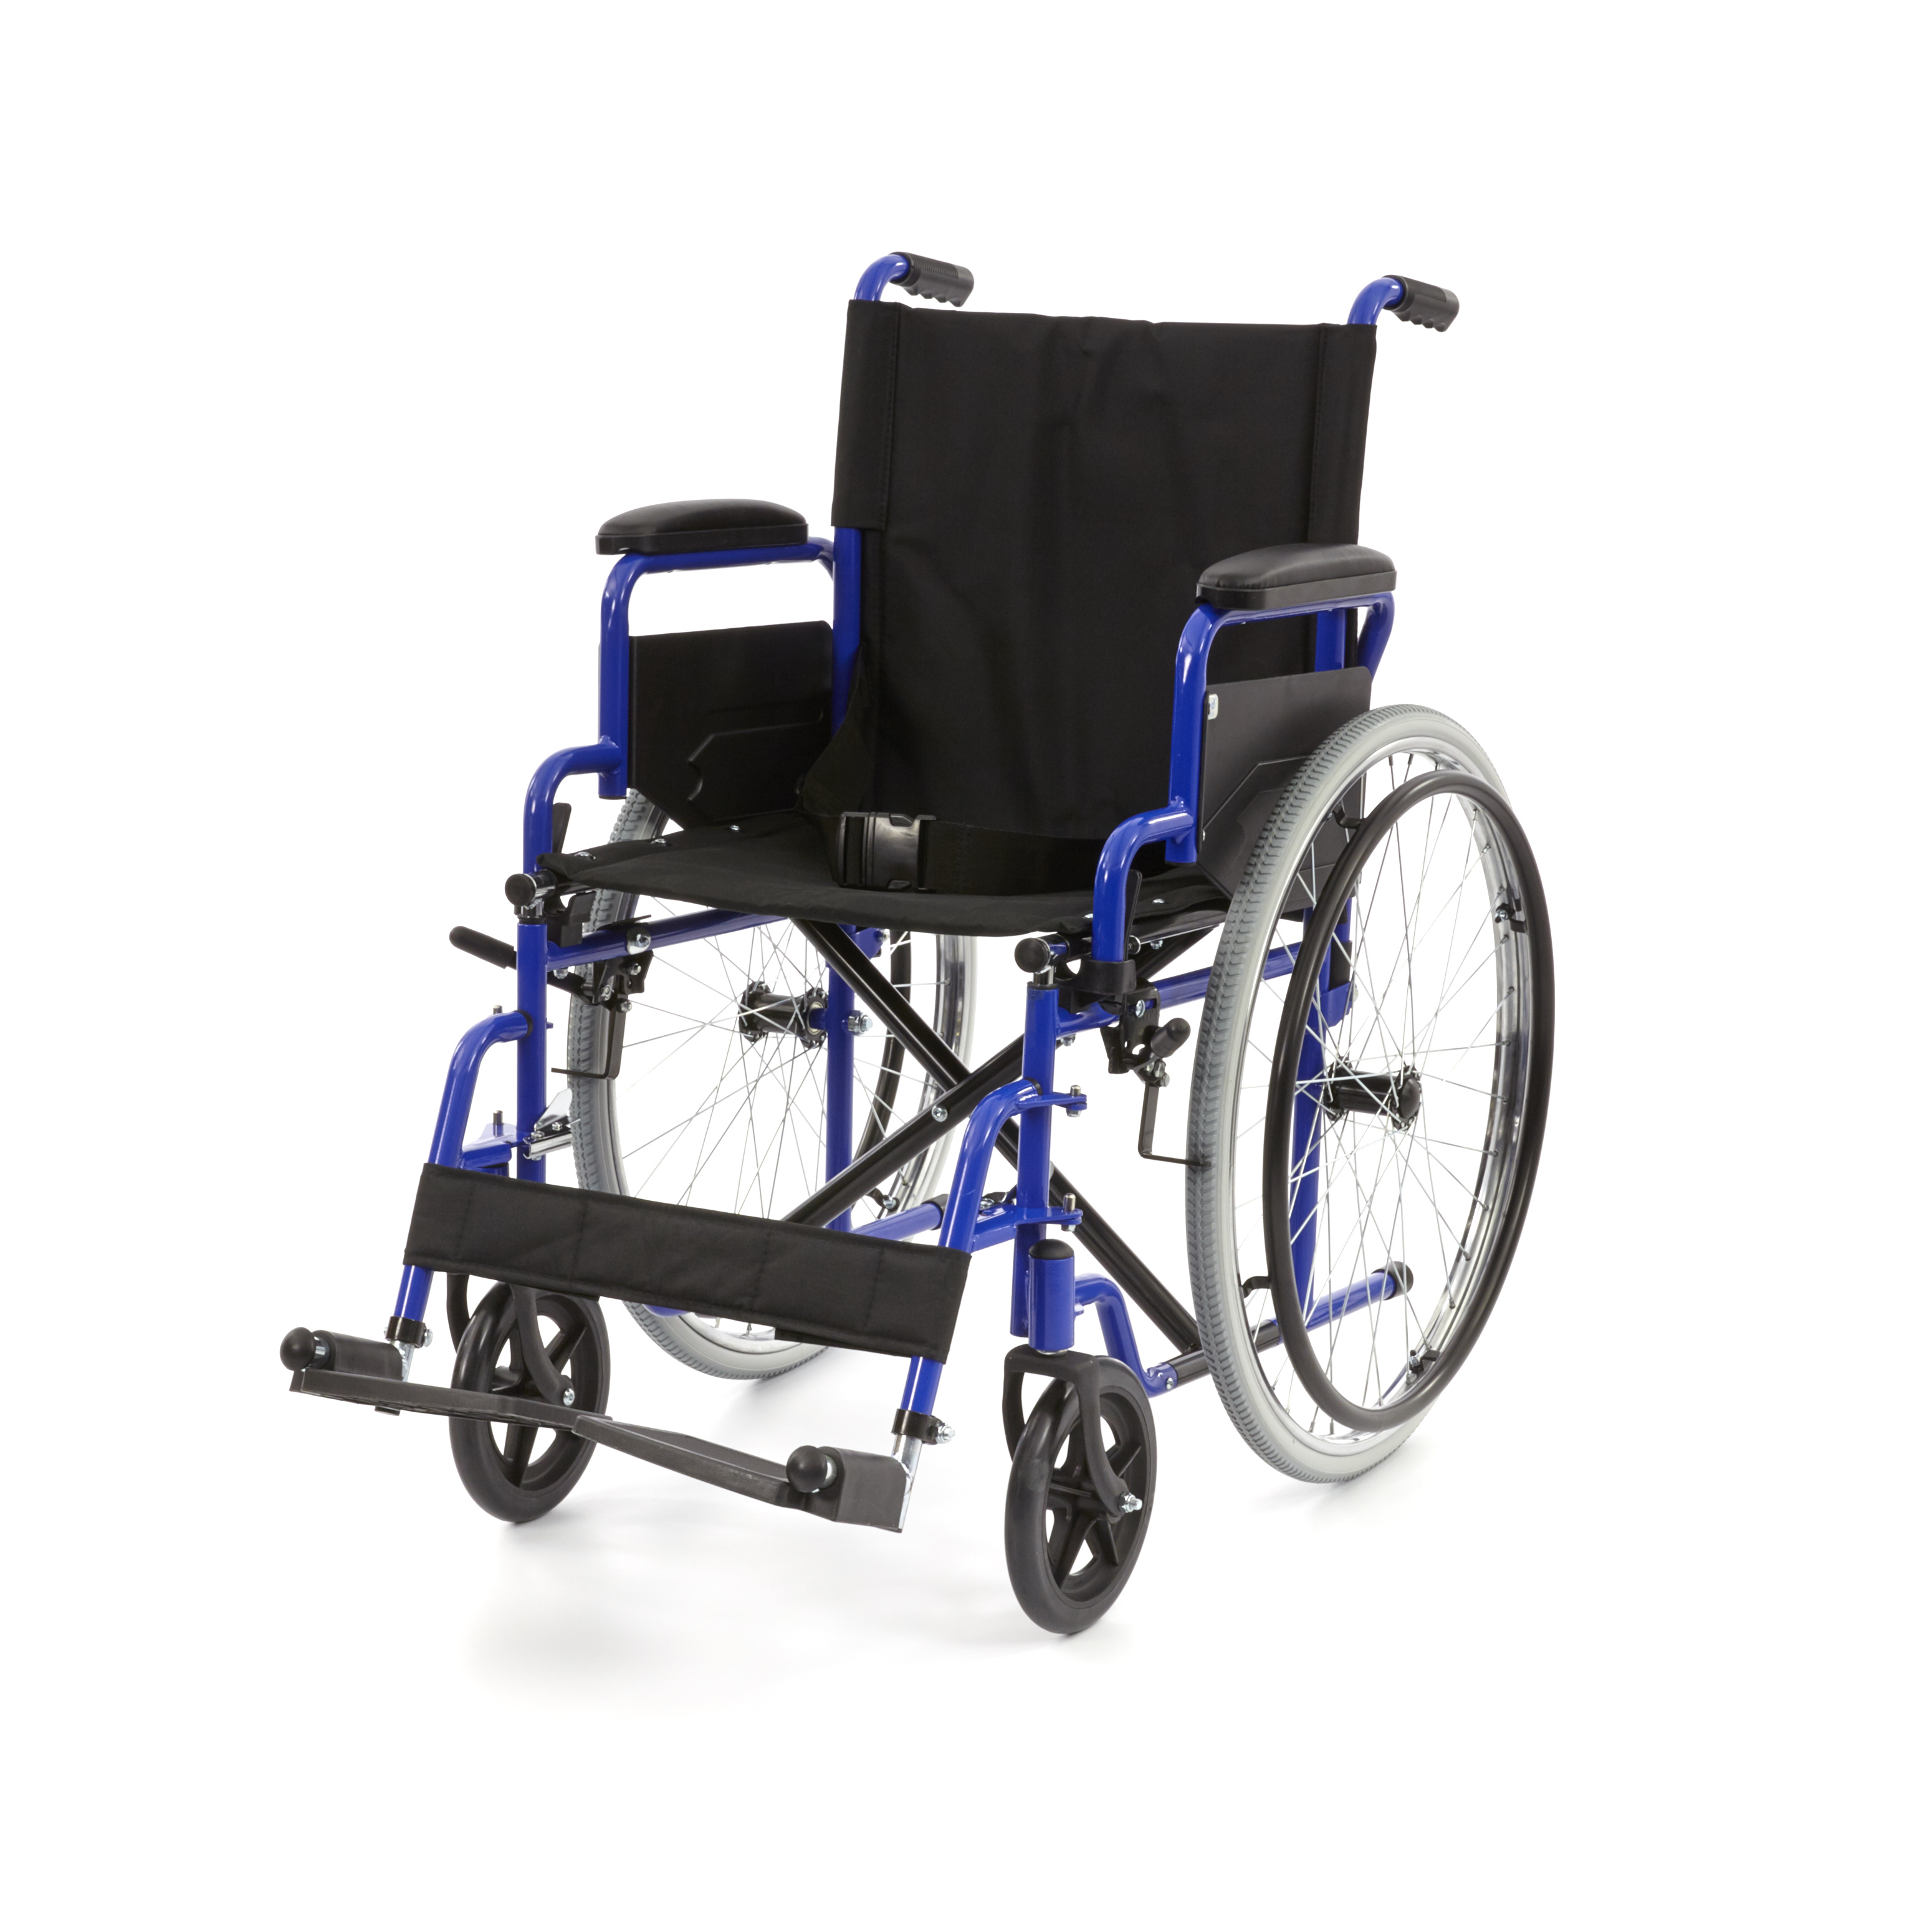 WHE-01-BLUE Romed inklapbare standaard rolstoel met flip-up armsteunen en uitklapbare voetsteunen.